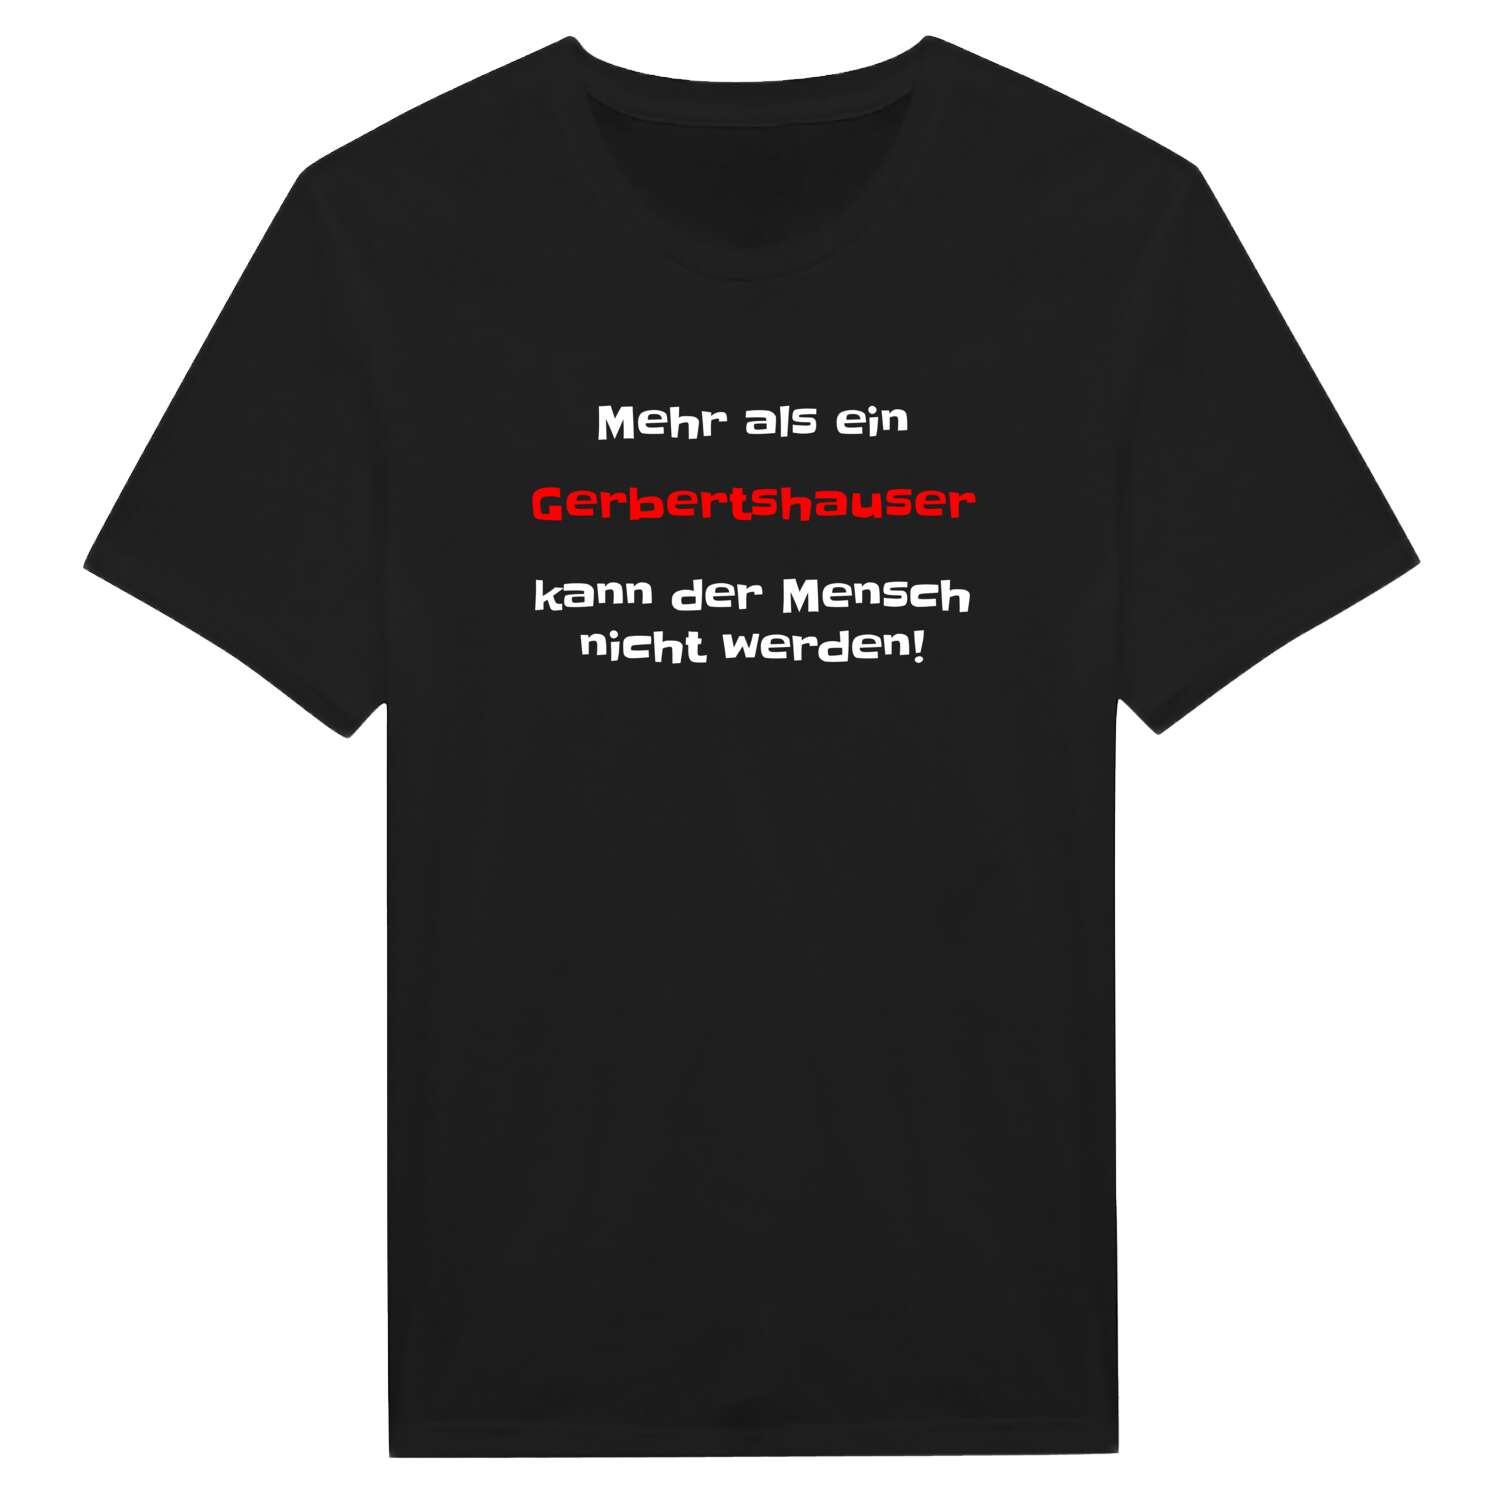 Gerbertshaus T-Shirt »Mehr als ein«